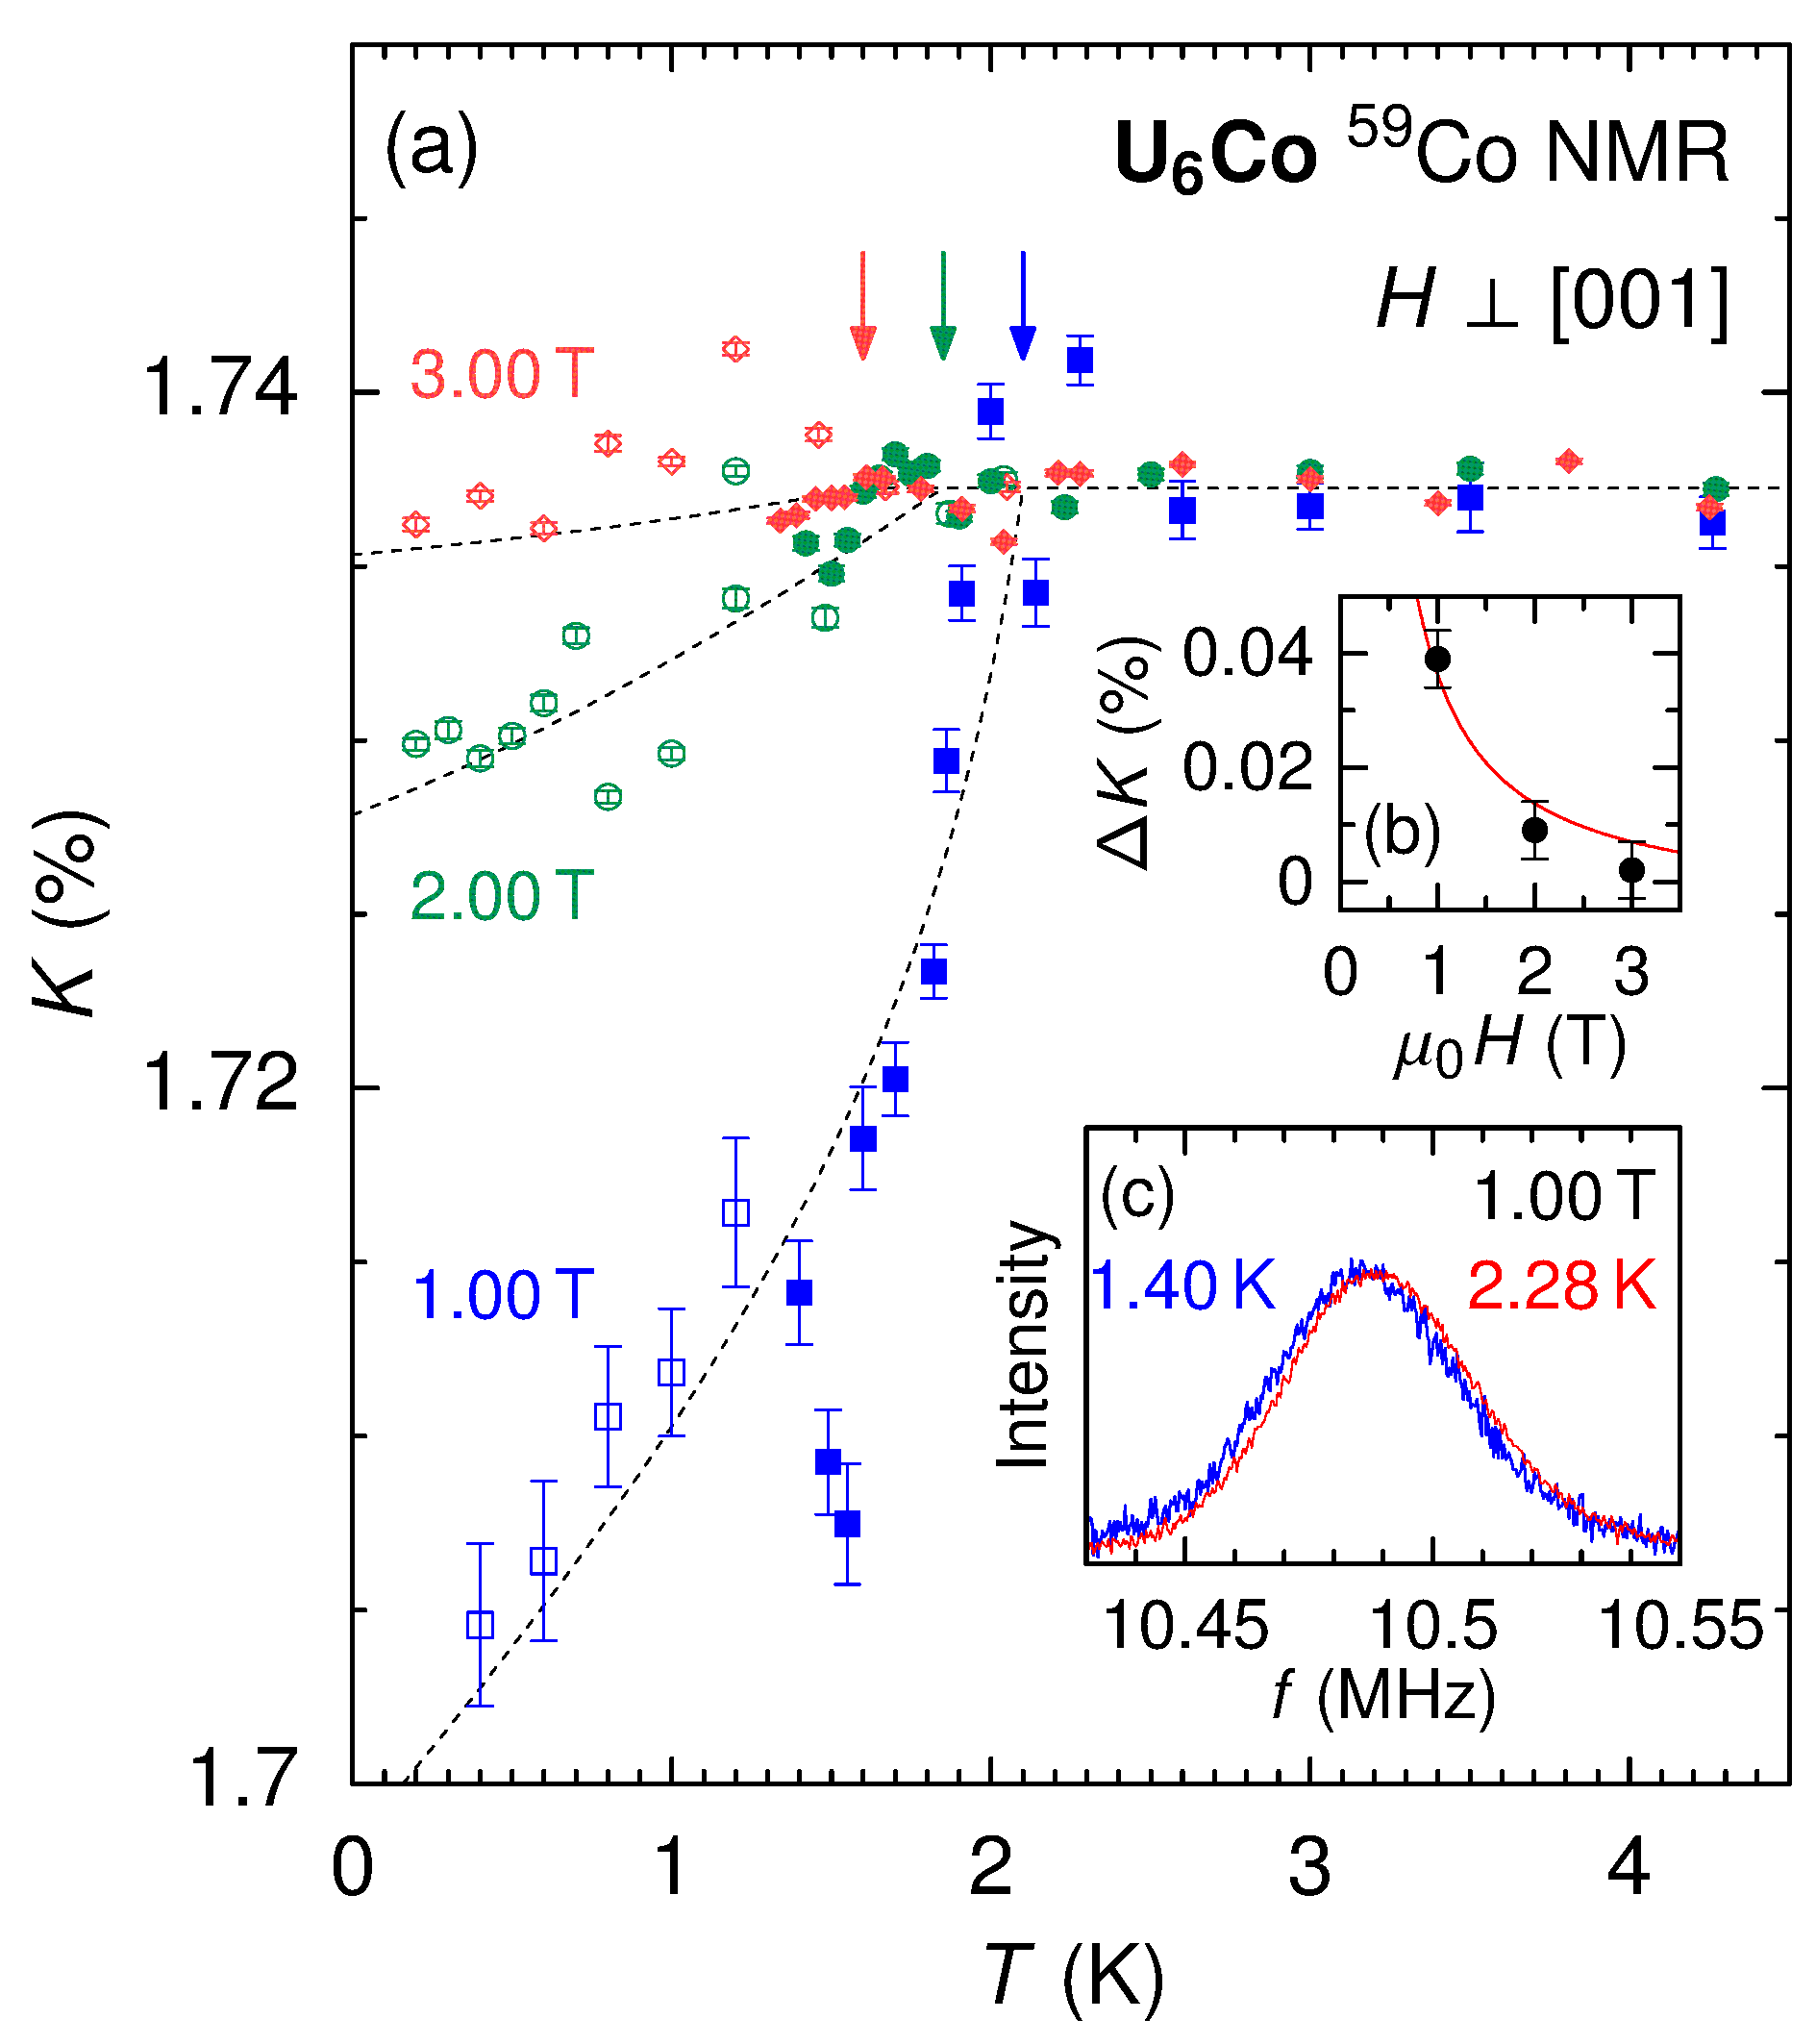 超伝導体U6Coにおける59Co NMRナイトシフトの超伝導状態での温度変化。
		1 Tから 3 Tまでの結果を示す。ナイトシフトは正常状態で約1.7%であるが、超伝導状態での減少量は1 Tでも0.04%と小さく、高磁場ほどさらに減少が抑制される。